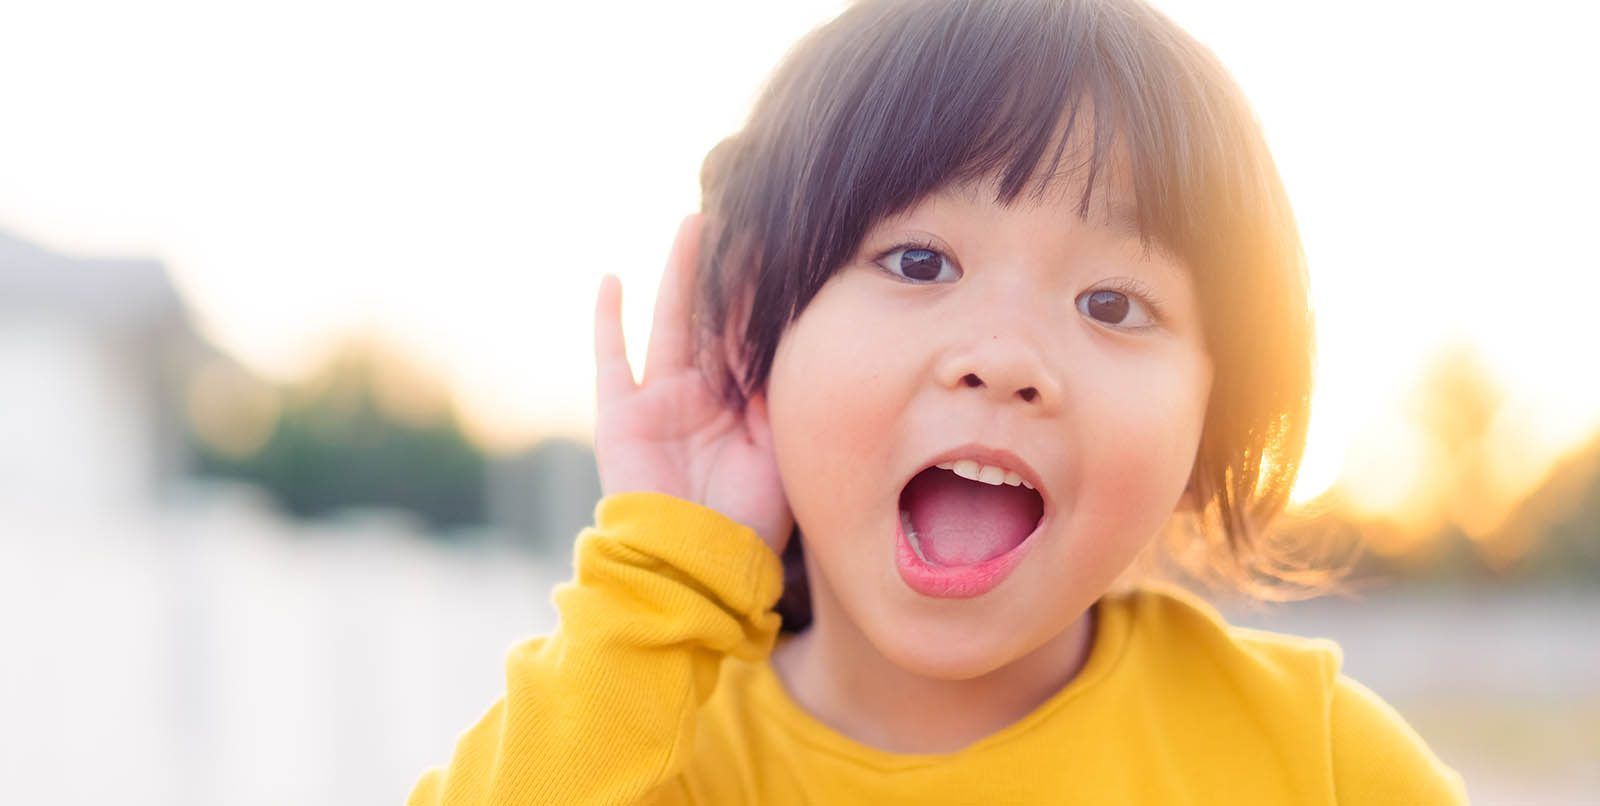 درمان ناشنوایی در برخی کودکان چینی با کمک ژن درمانی! + ویدیو